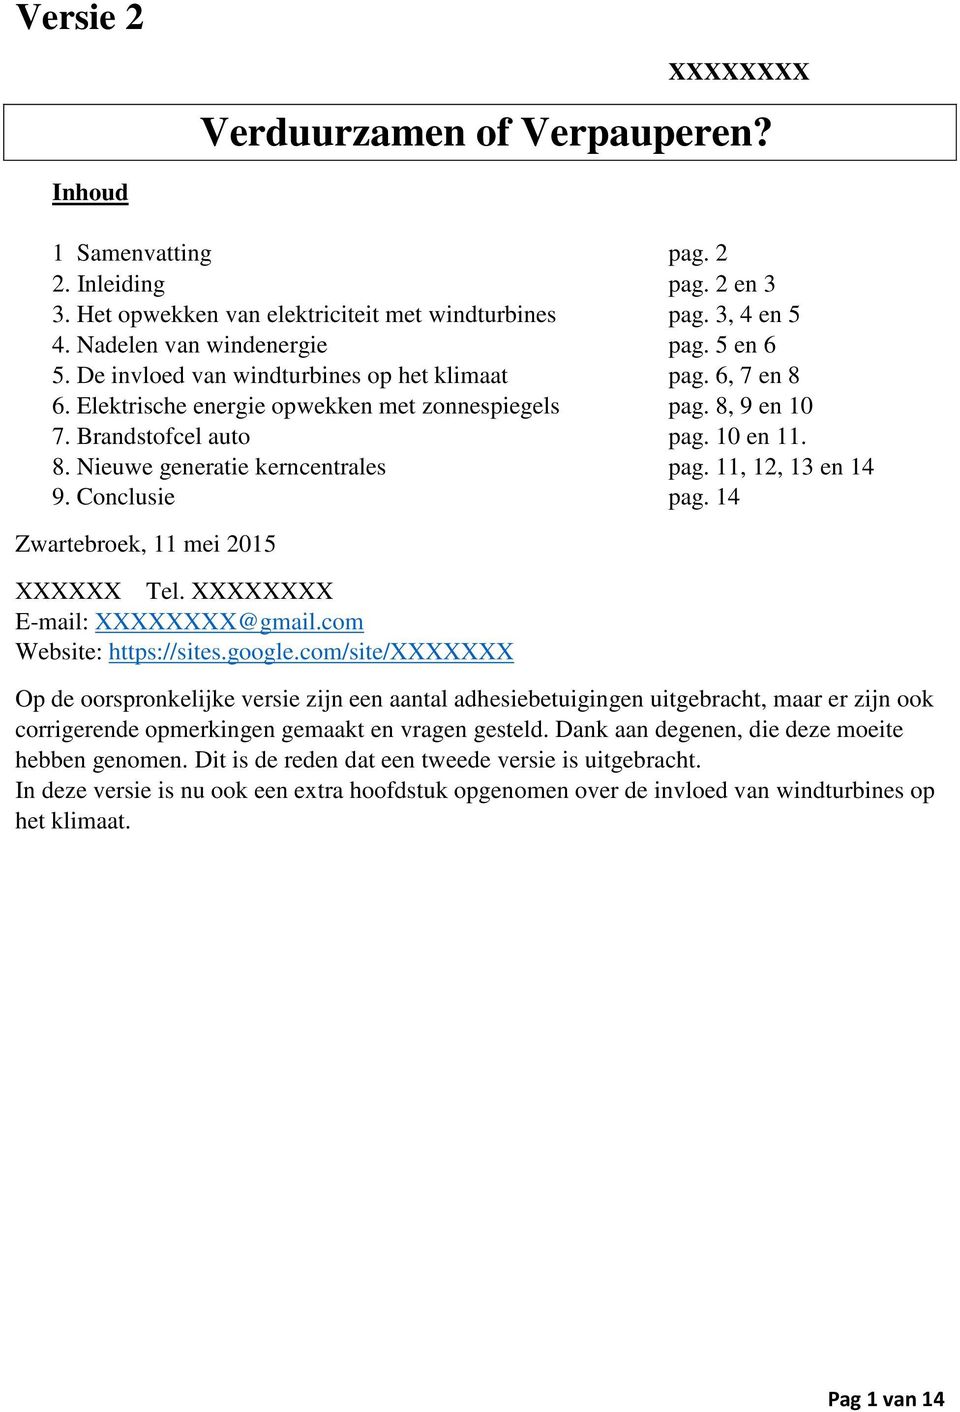 11, 12, 13 en 14 9. Conclusie pag. 14 Zwartebroek, 11 mei 2015 XXXXXX Tel. XXXXXXXX E-mail: XXXXXXXX@gmail.com Website: https://sites.google.